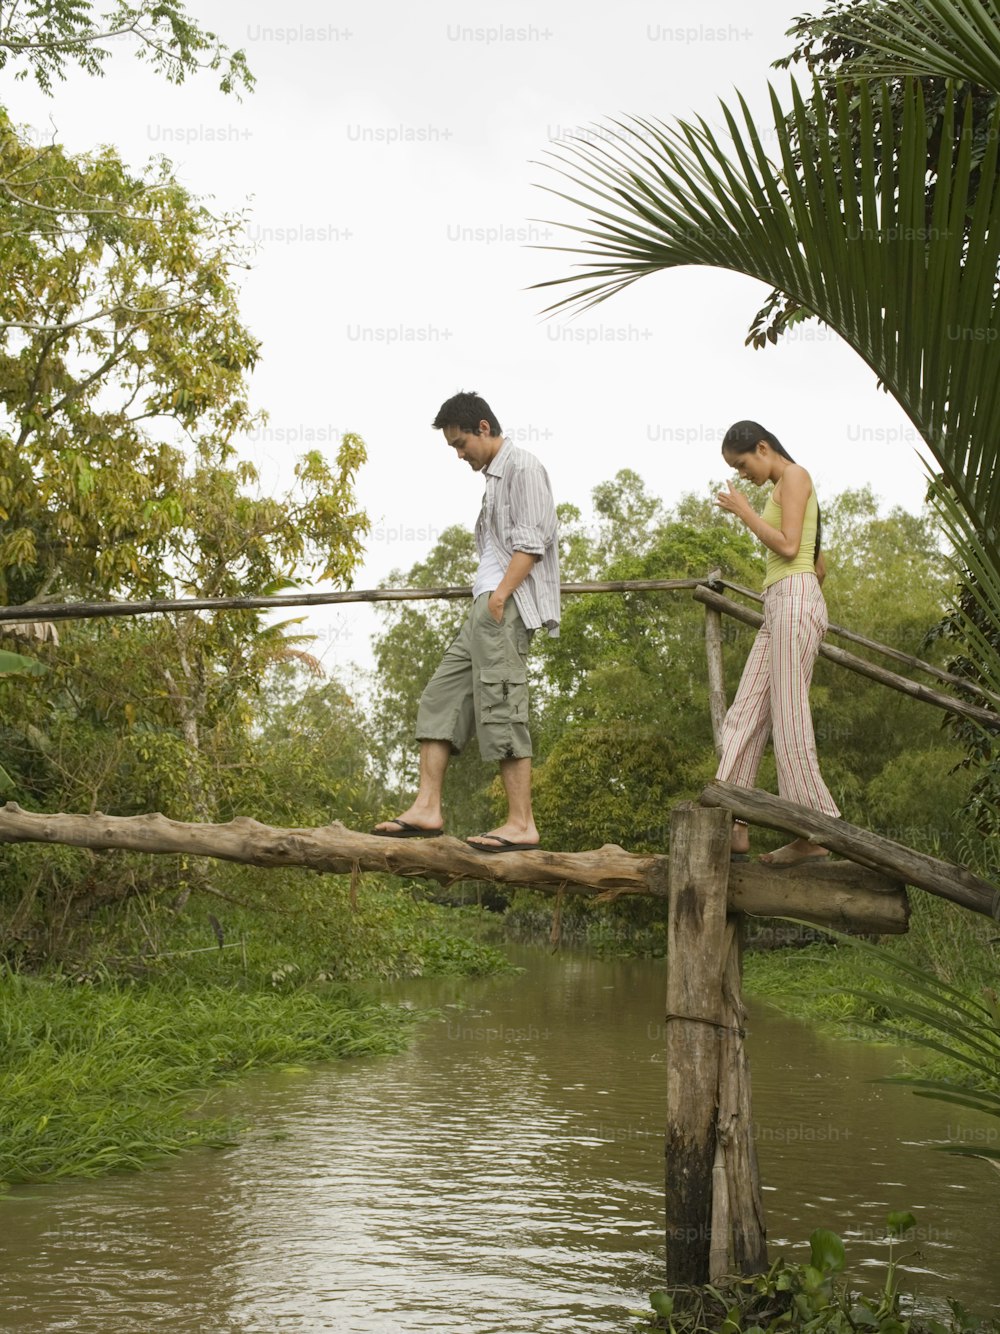 Un homme et une femme traversant un pont en bois au-dessus d’une rivière